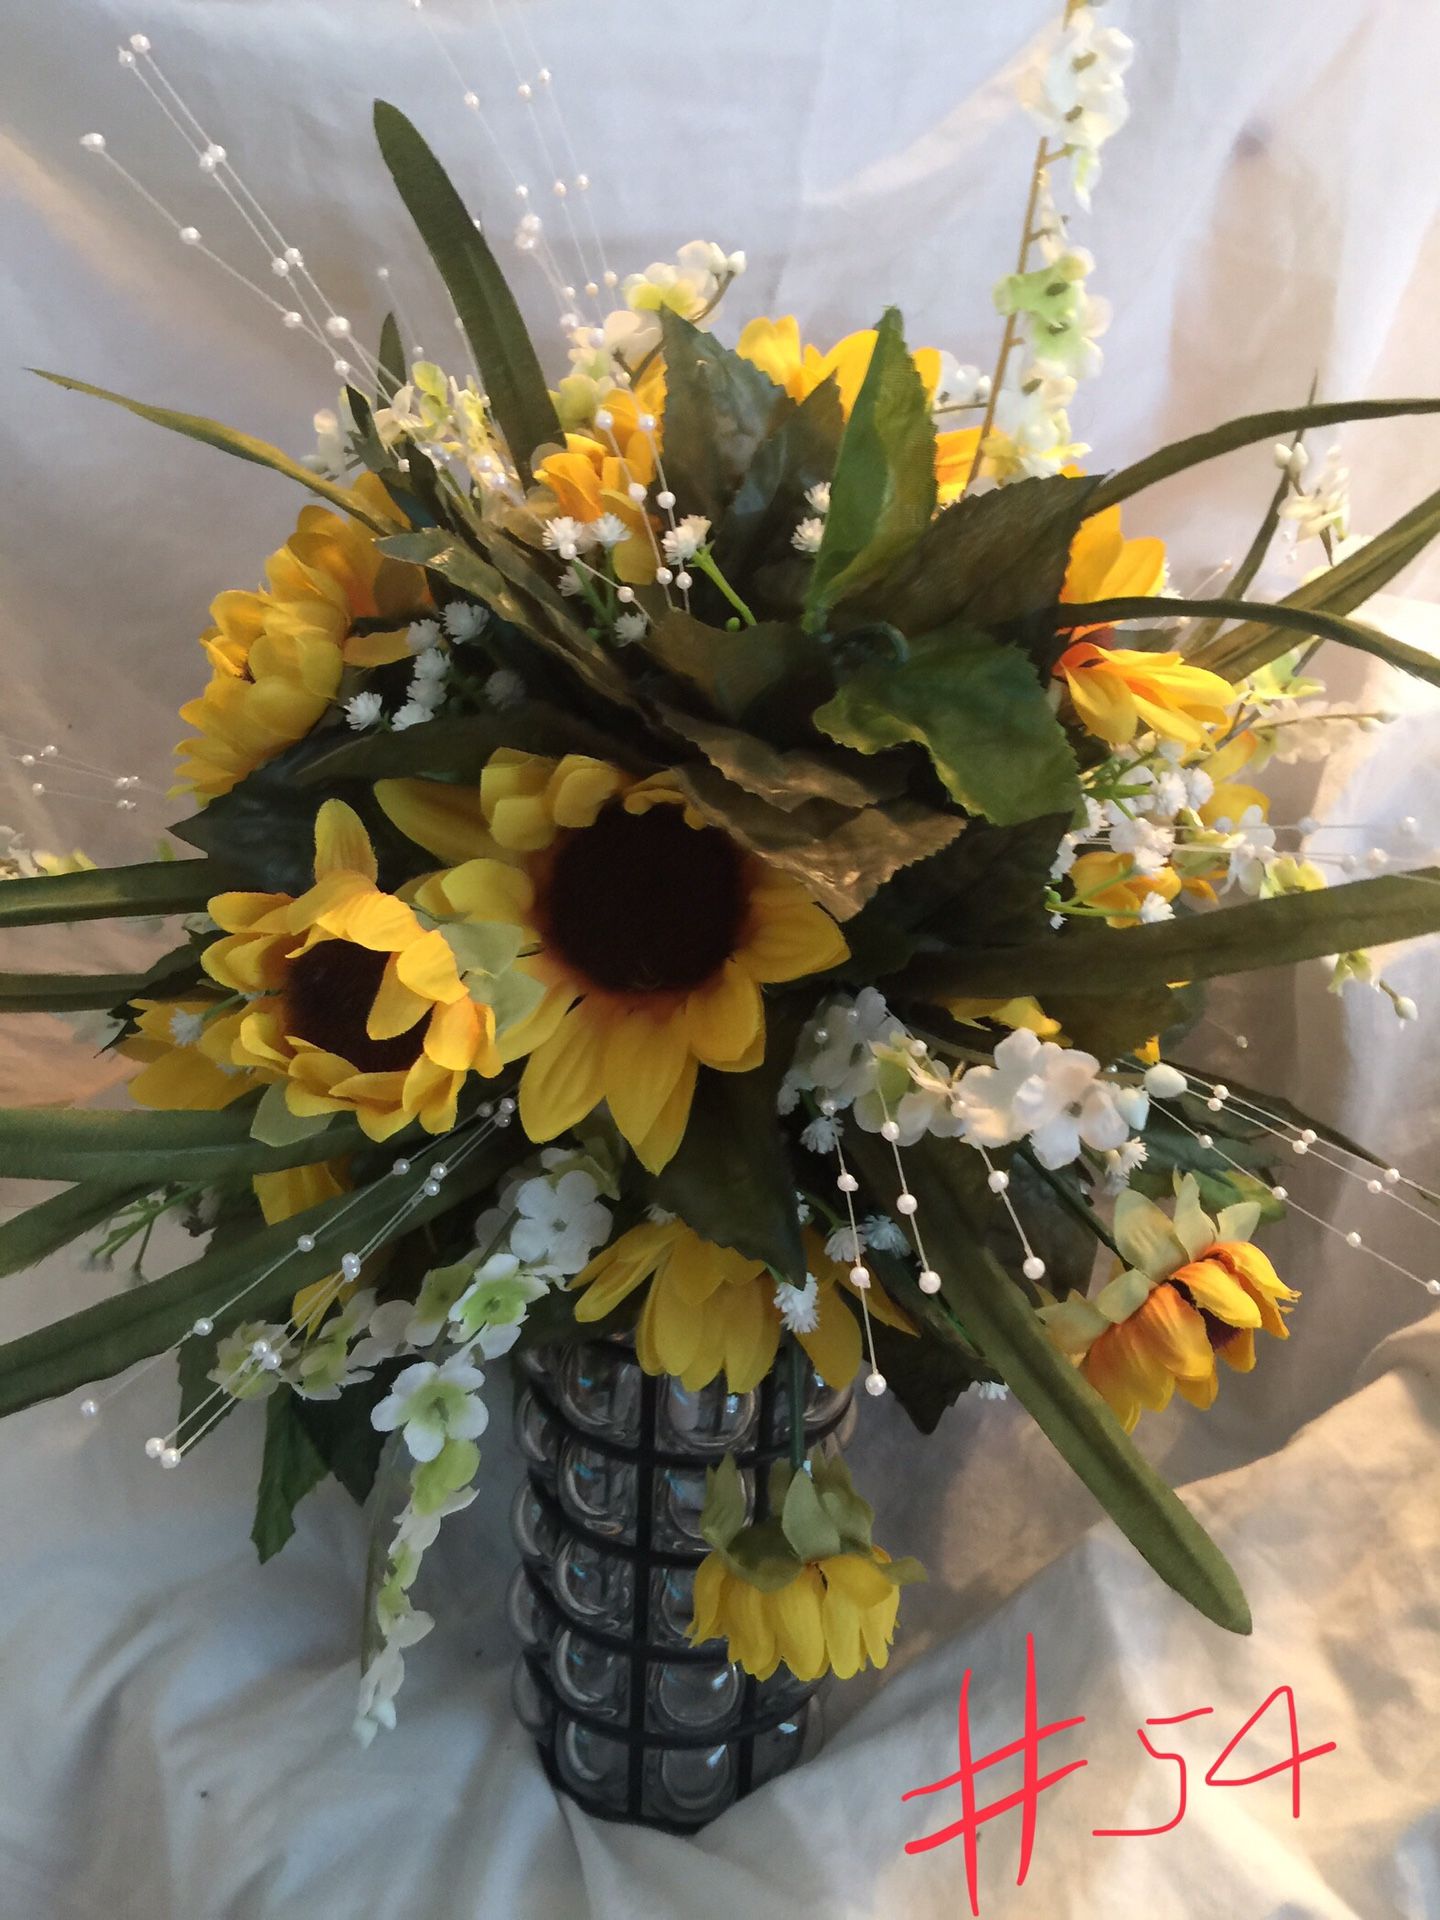 Sunflowers flowers arrangement bridal weddings bouquets